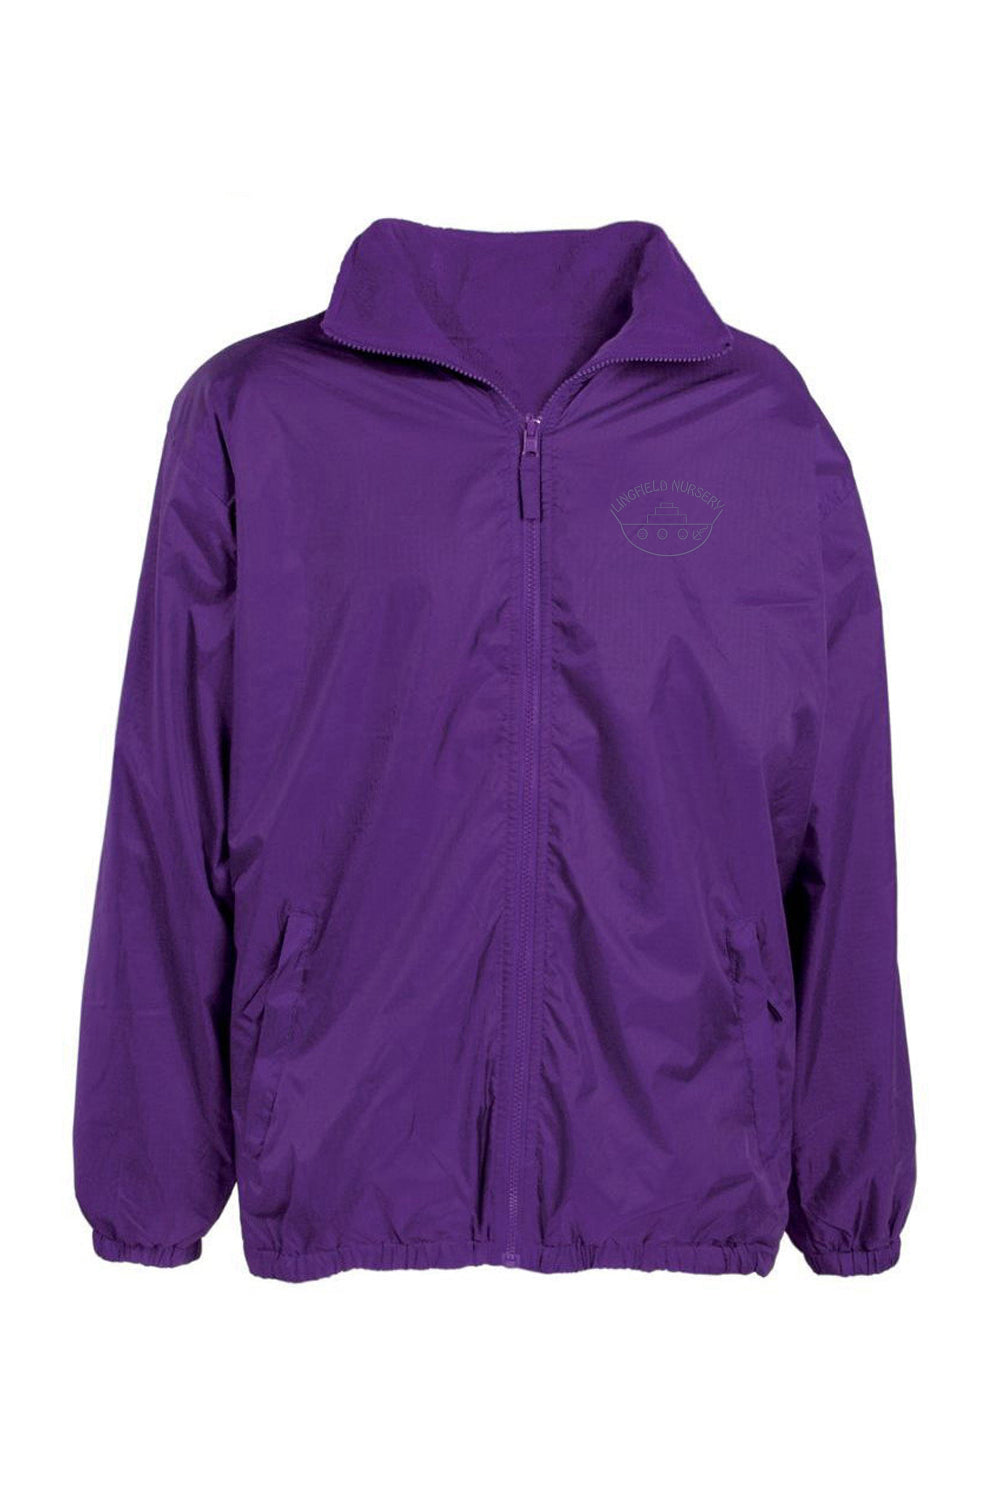 Lingfield Nursery Purple Shower Jacket